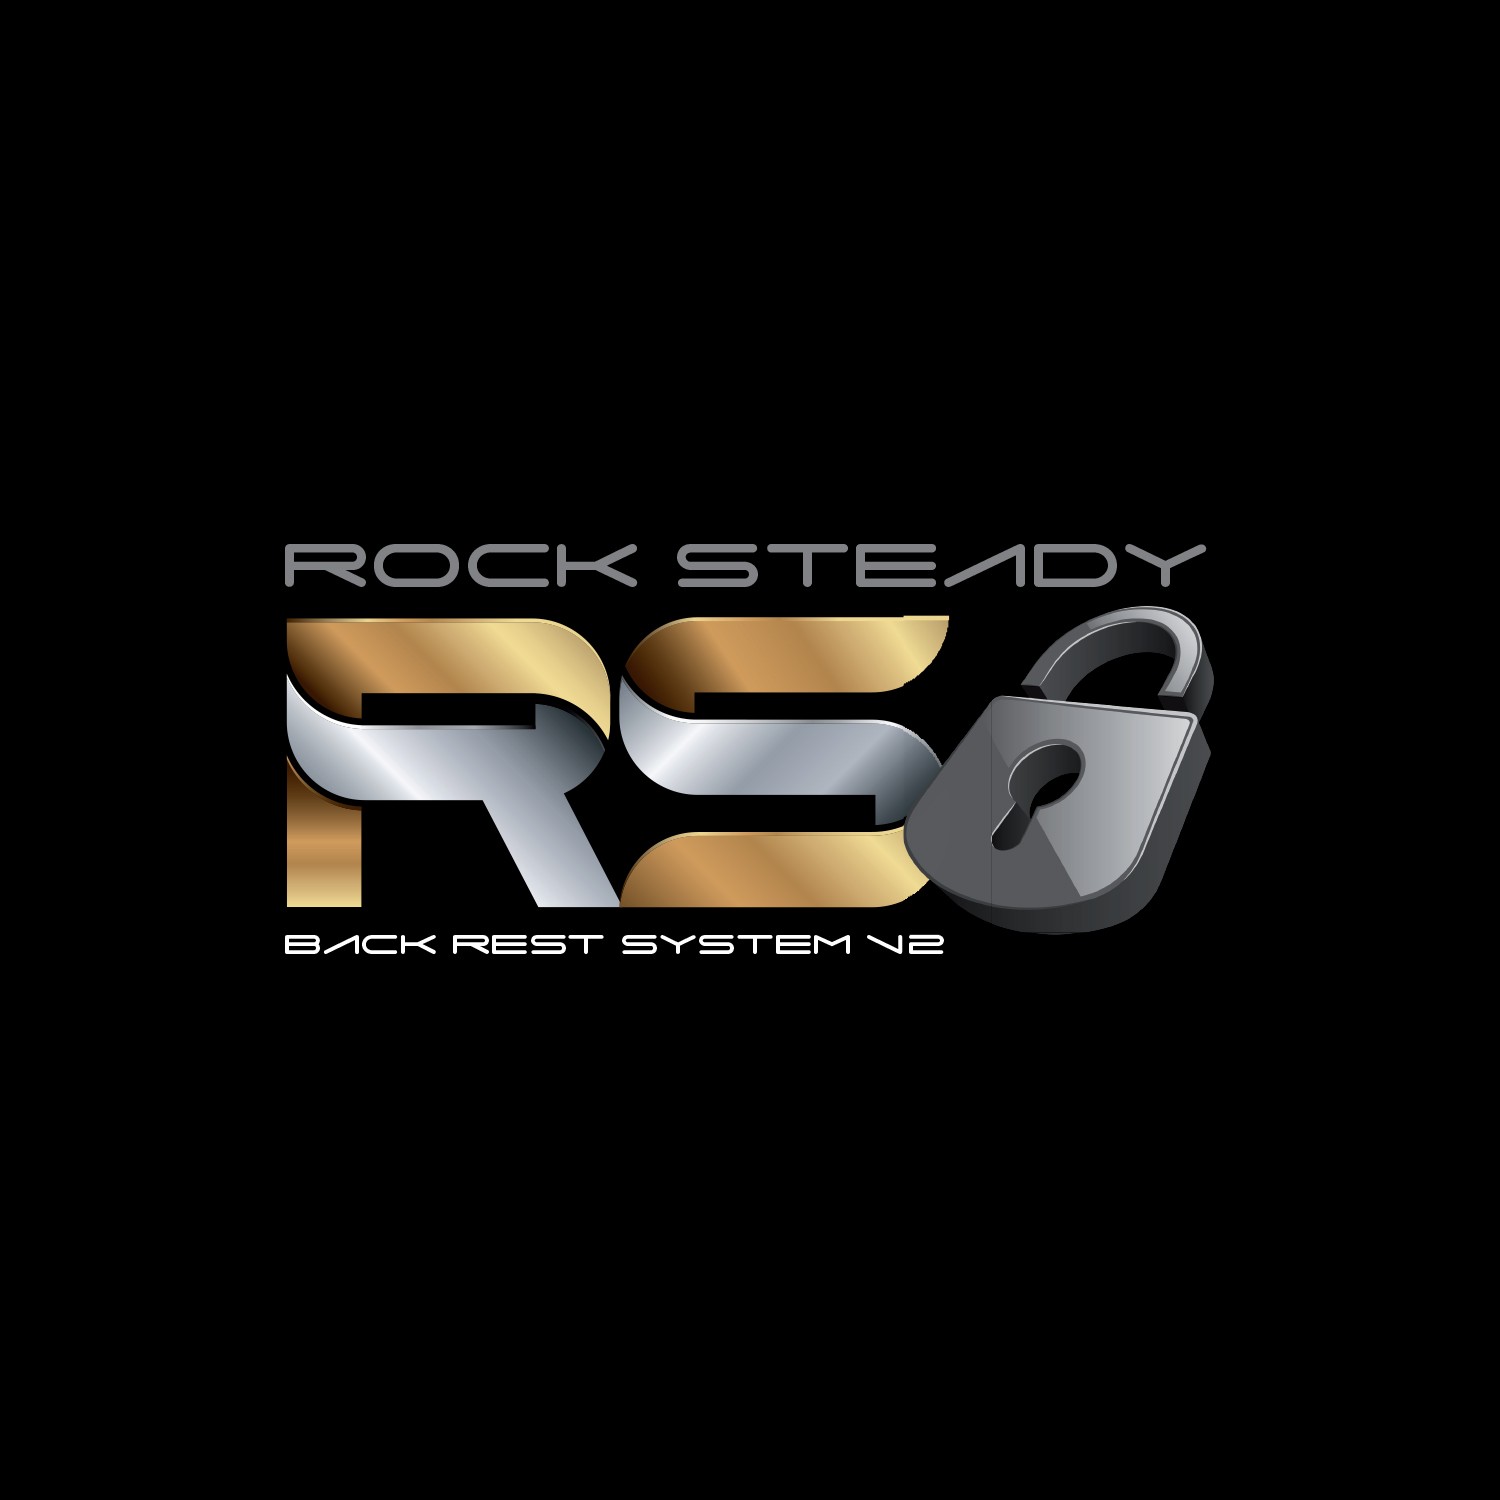 ROCK STEADY BACK REST SYSTEM V2